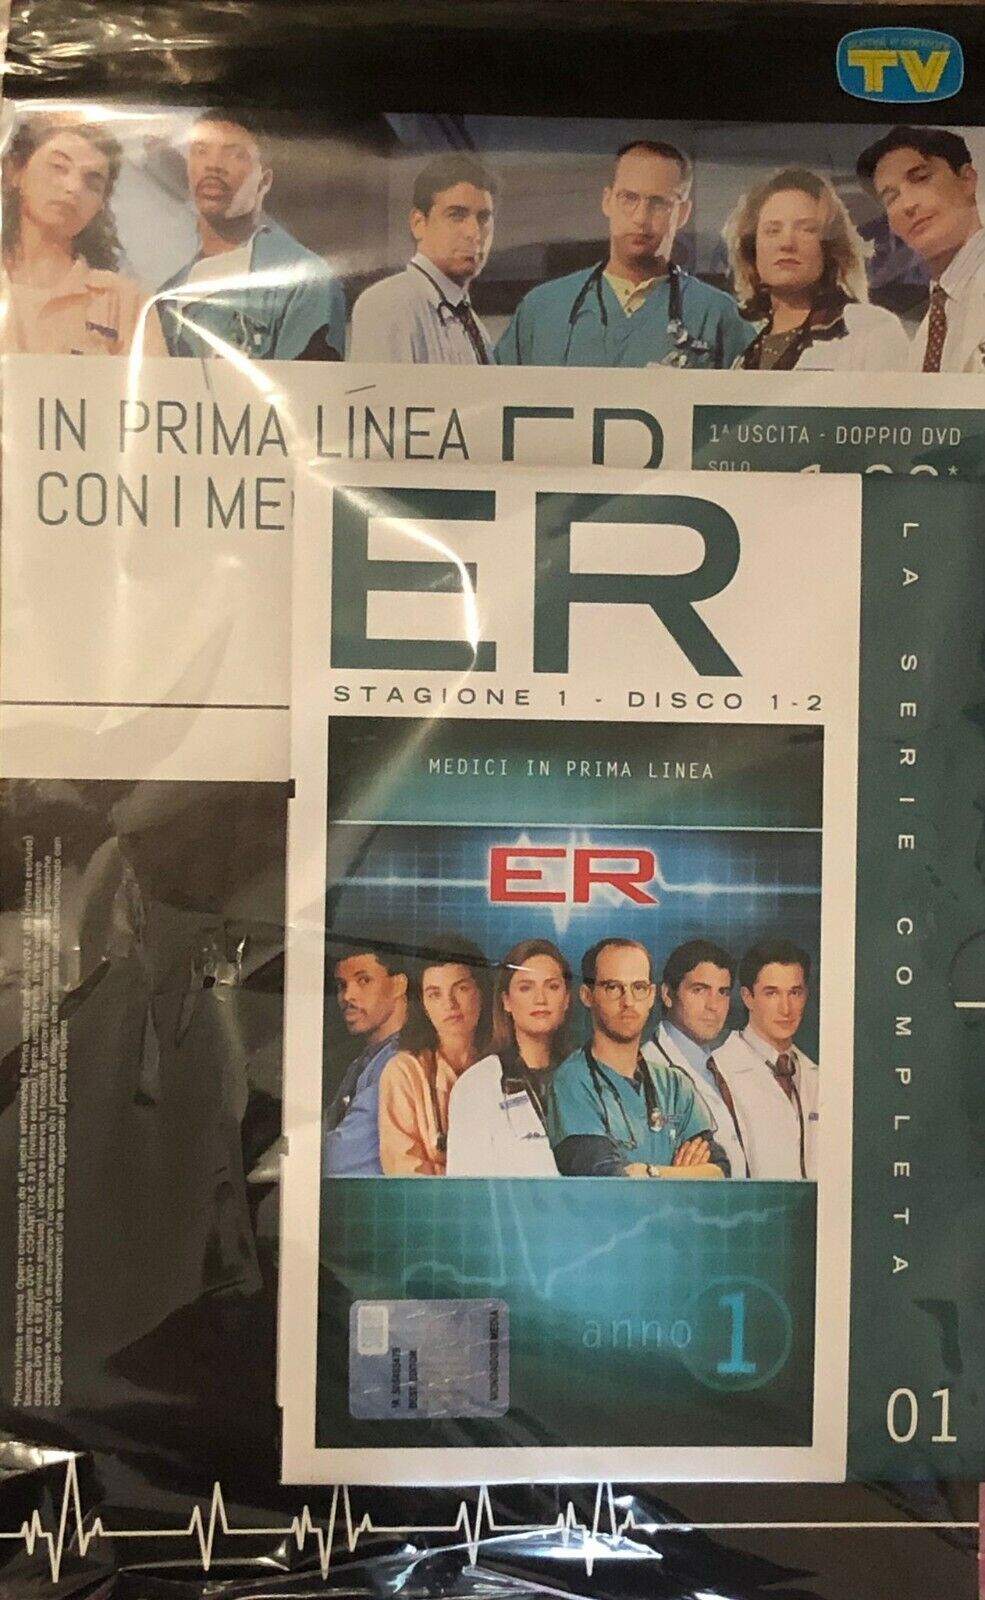 ER Medici in prima linea Stagione 1 Disco 1-2 di Mondadori,  2022,  Tv Sorrisi E